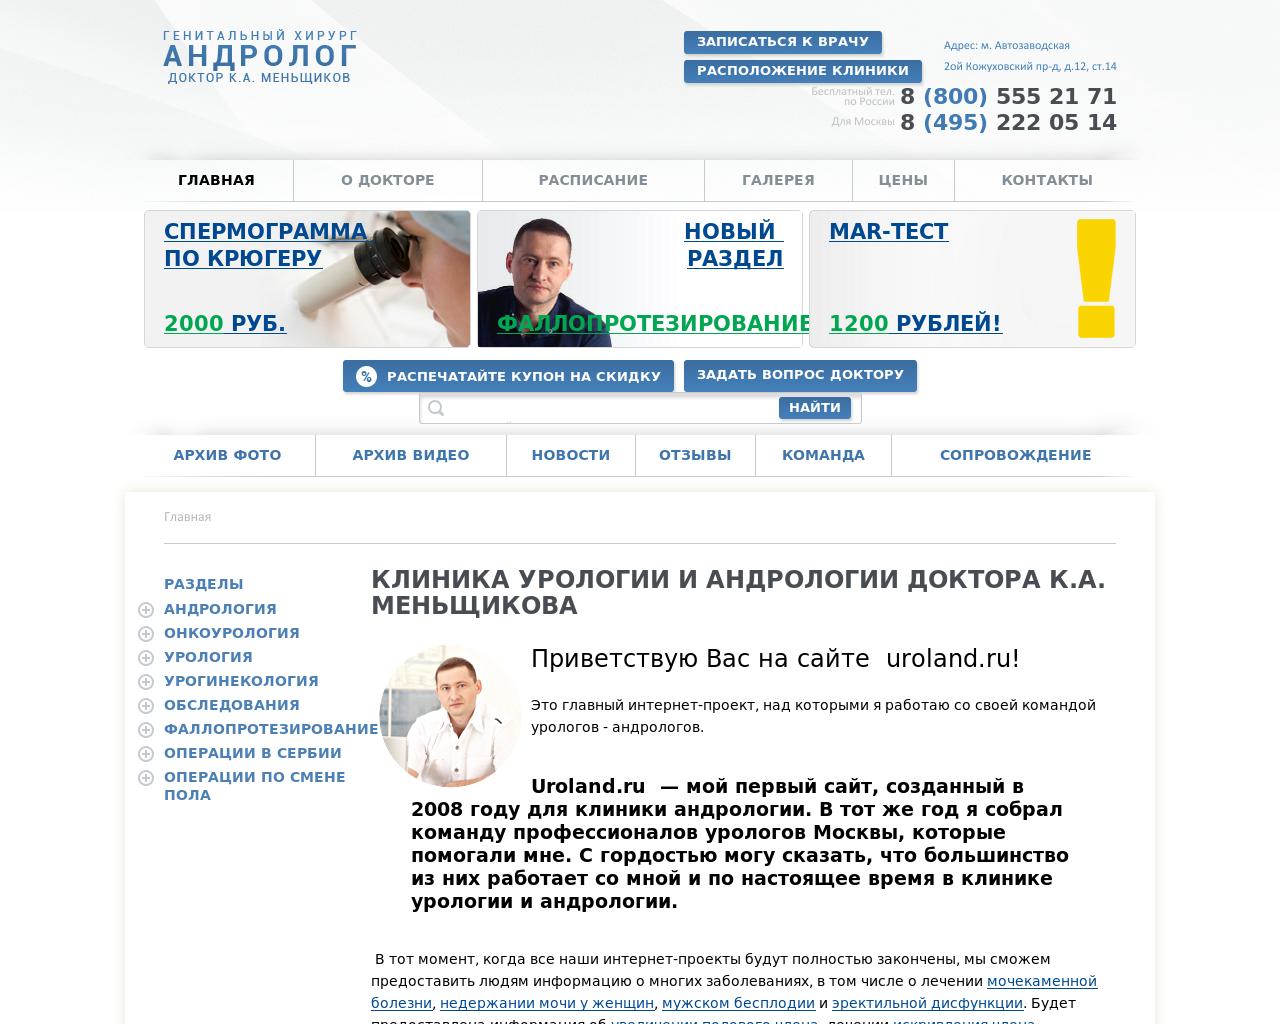 Изображение сайта uroland.ru в разрешении 1280x1024